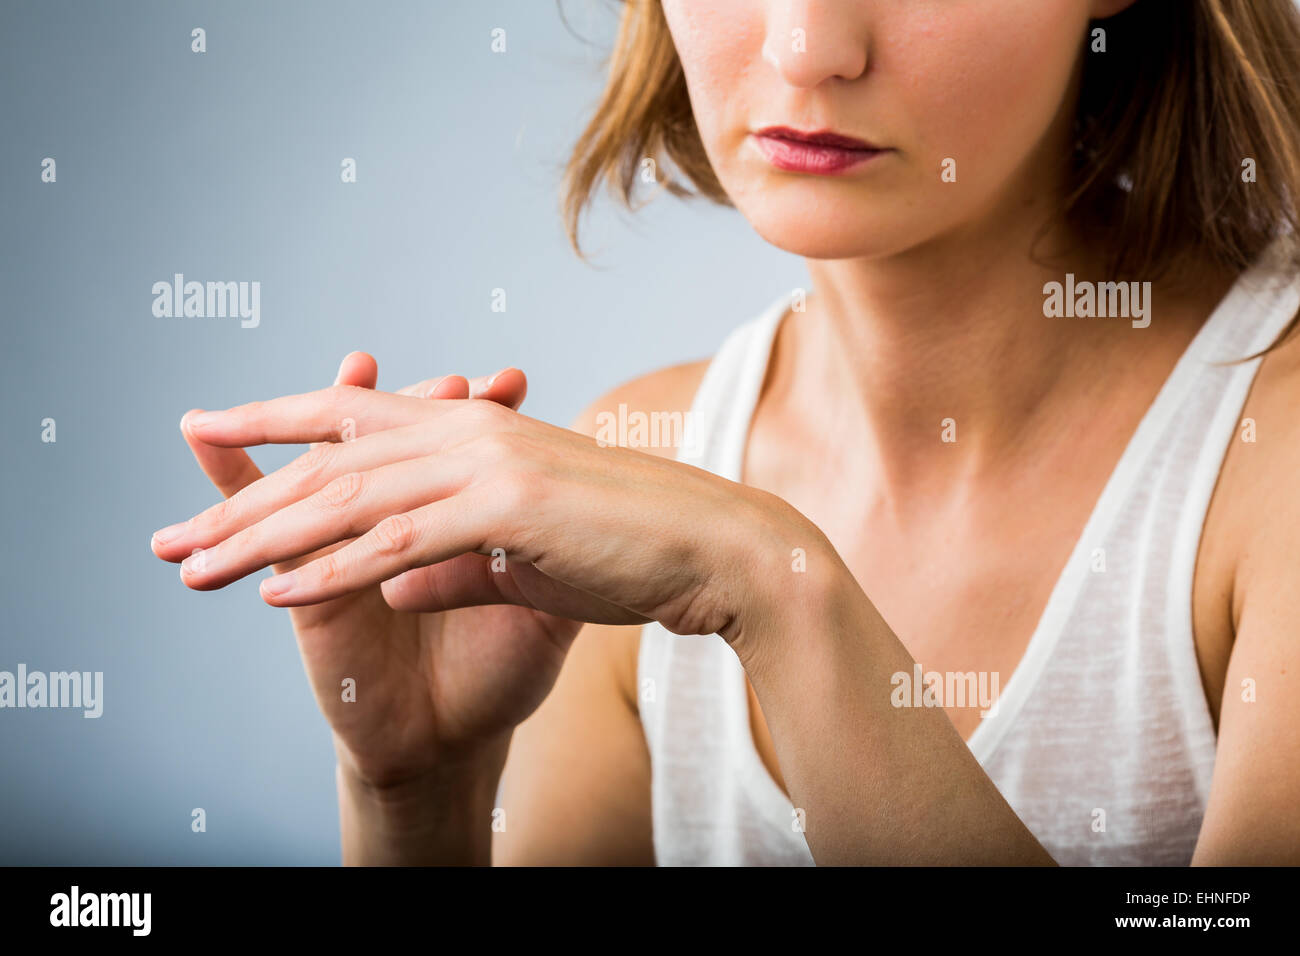 Mujer inspeccionando su mano. Foto de stock